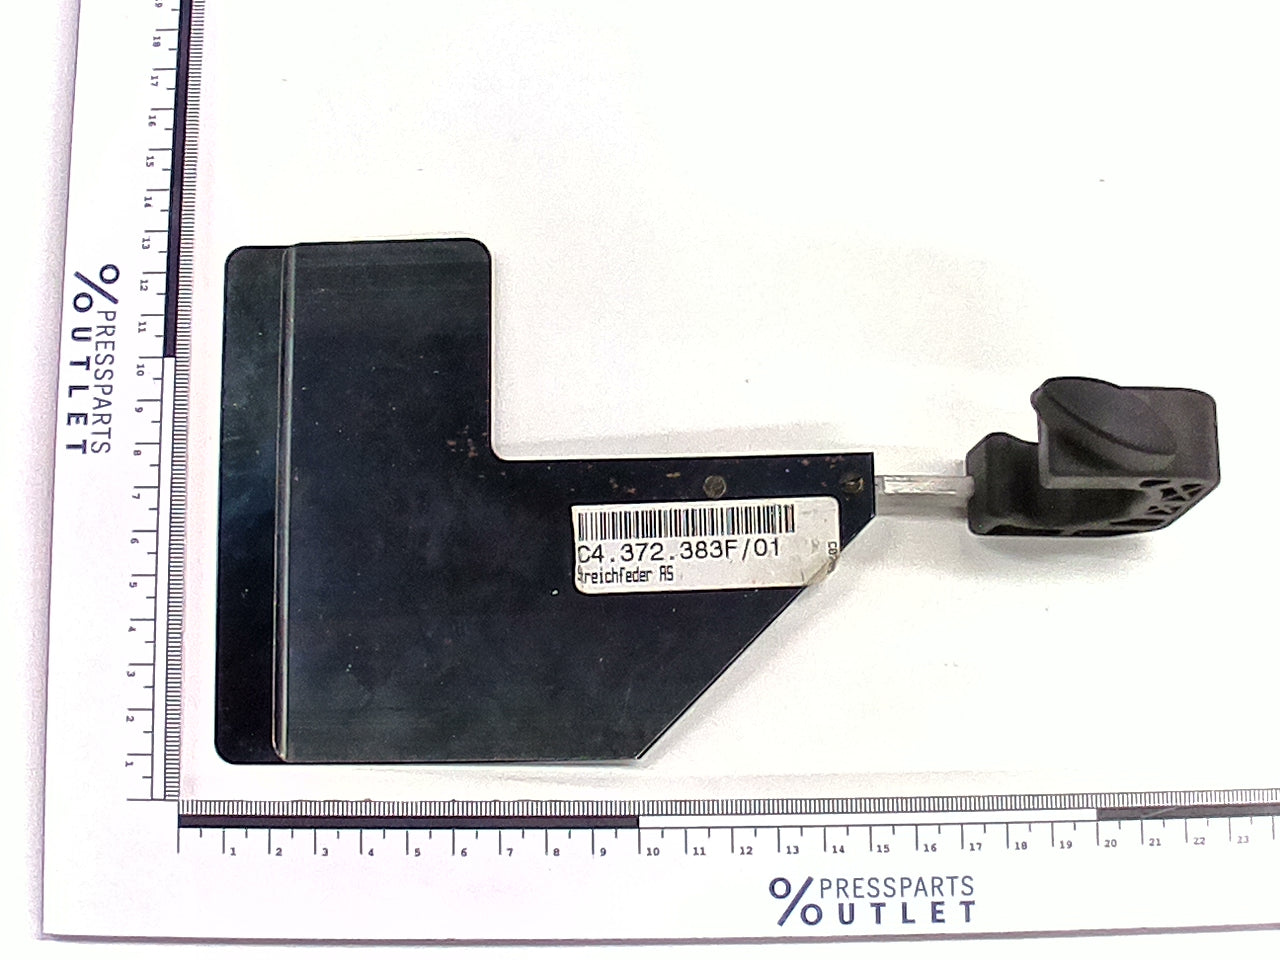 Separator spring DS - C4.372.383F/01 - Streichfeder AS